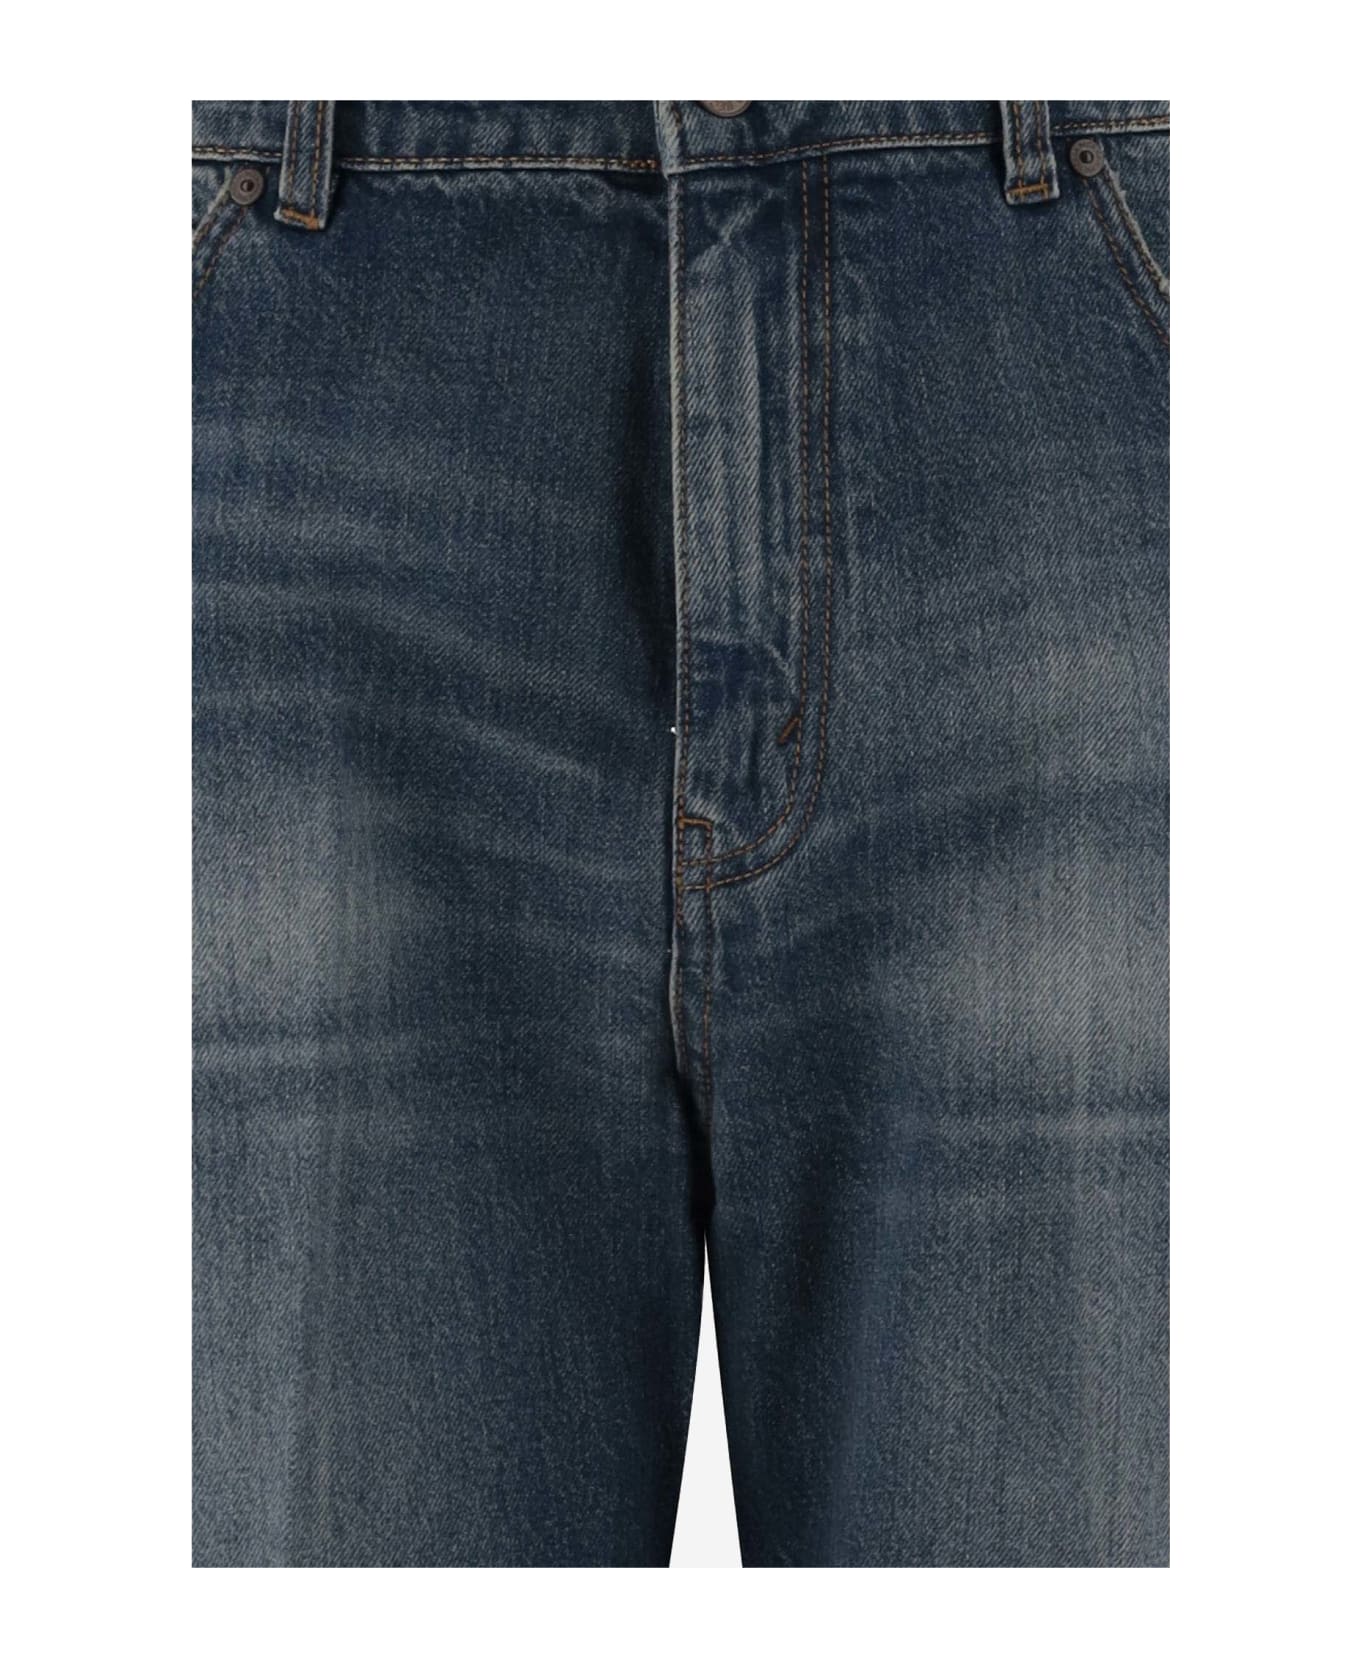 Victoria Beckham Cotton Denim Jeans - Denim